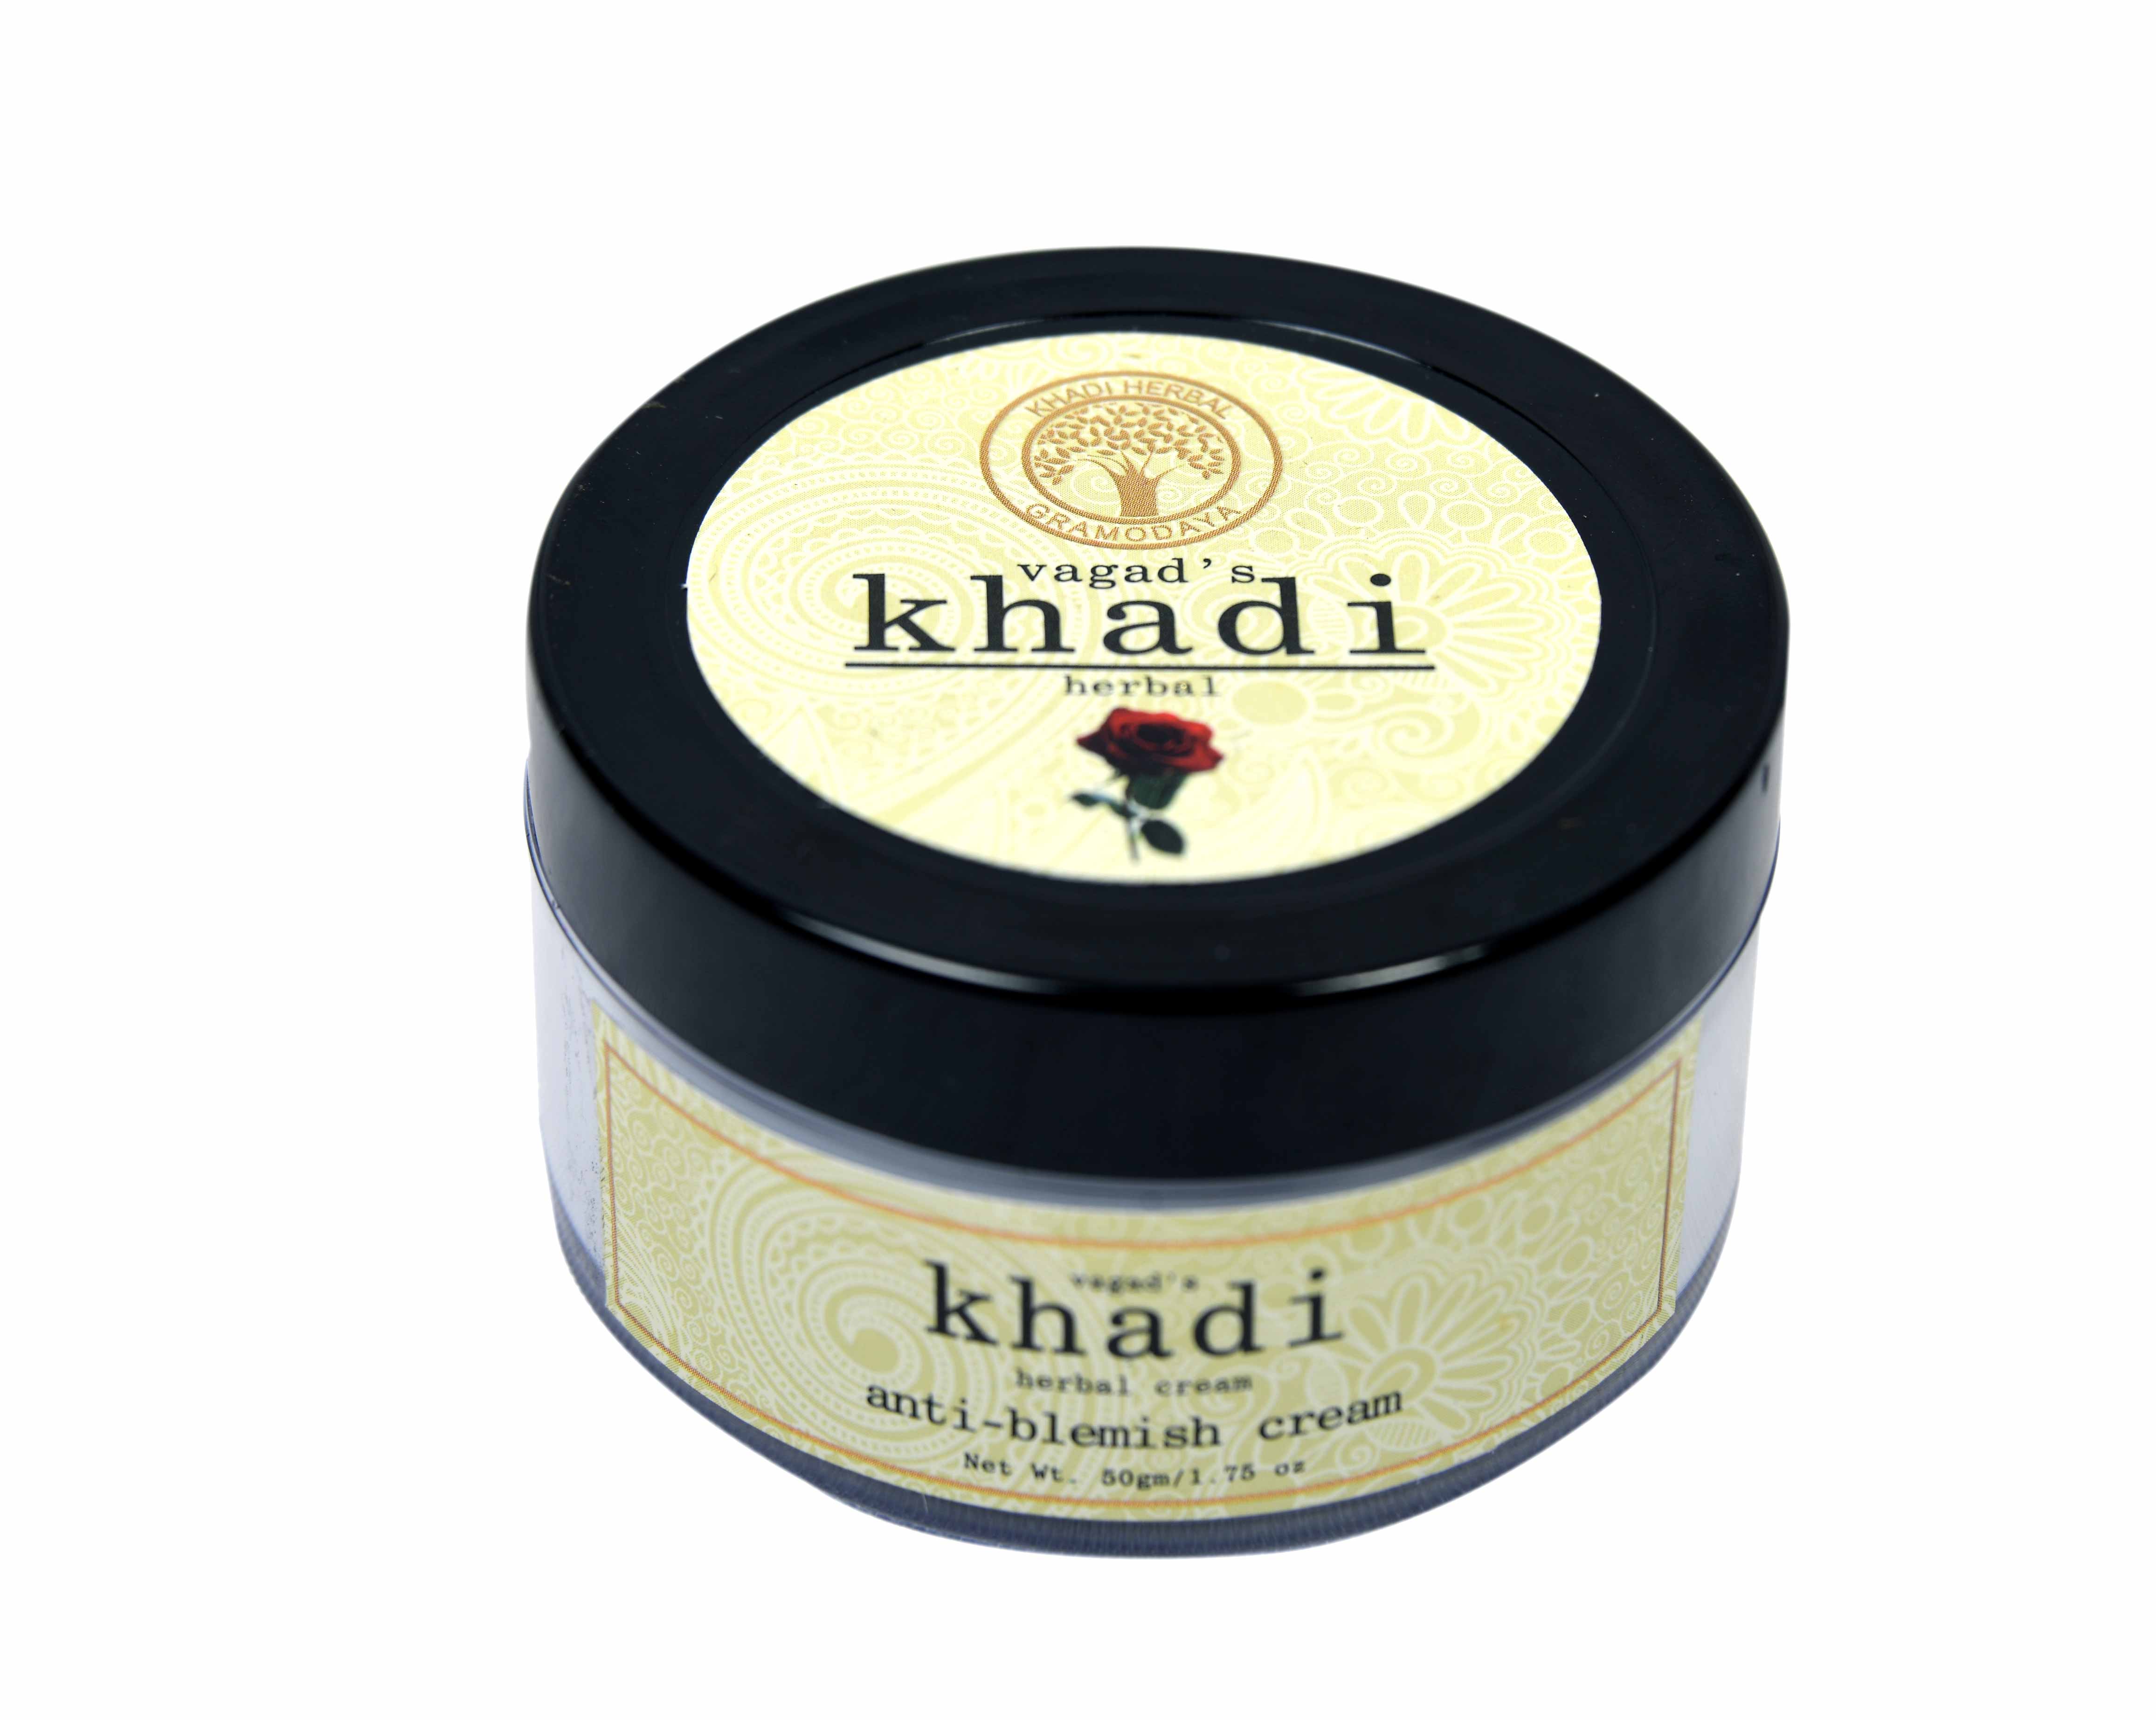 Vagad's Khadi Anti Blemish Cream